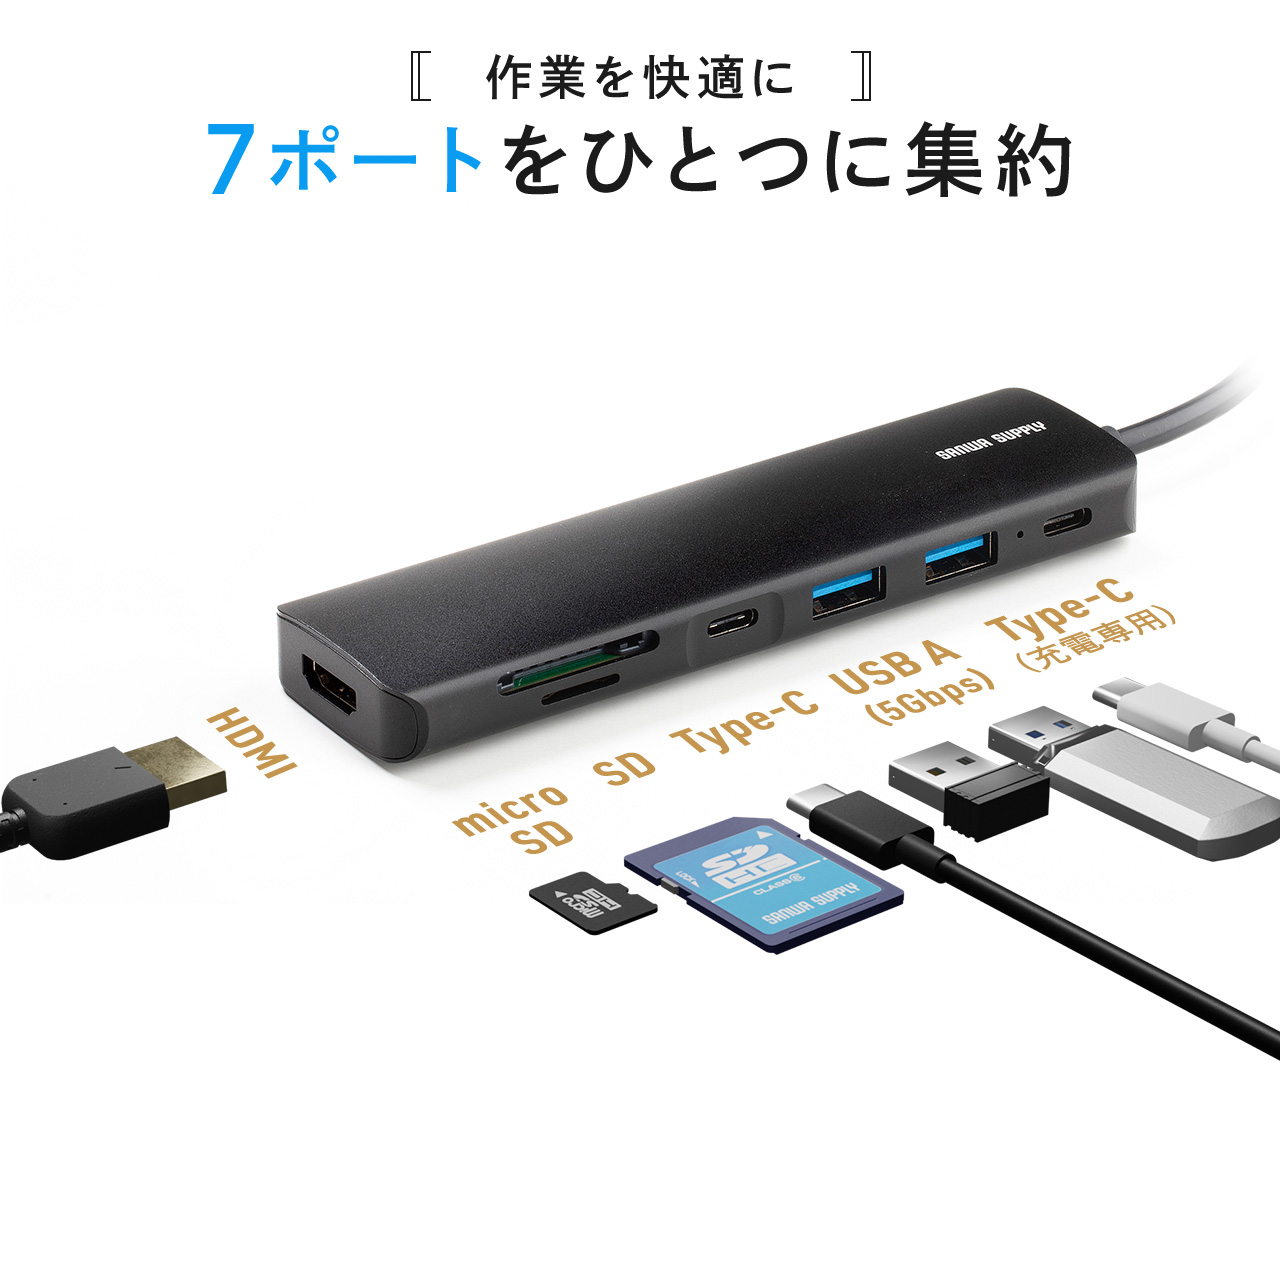 ☆送料無料 Plugable USB-C ドッキングステー ドリーダー付き 49スポーツ/アウトドア